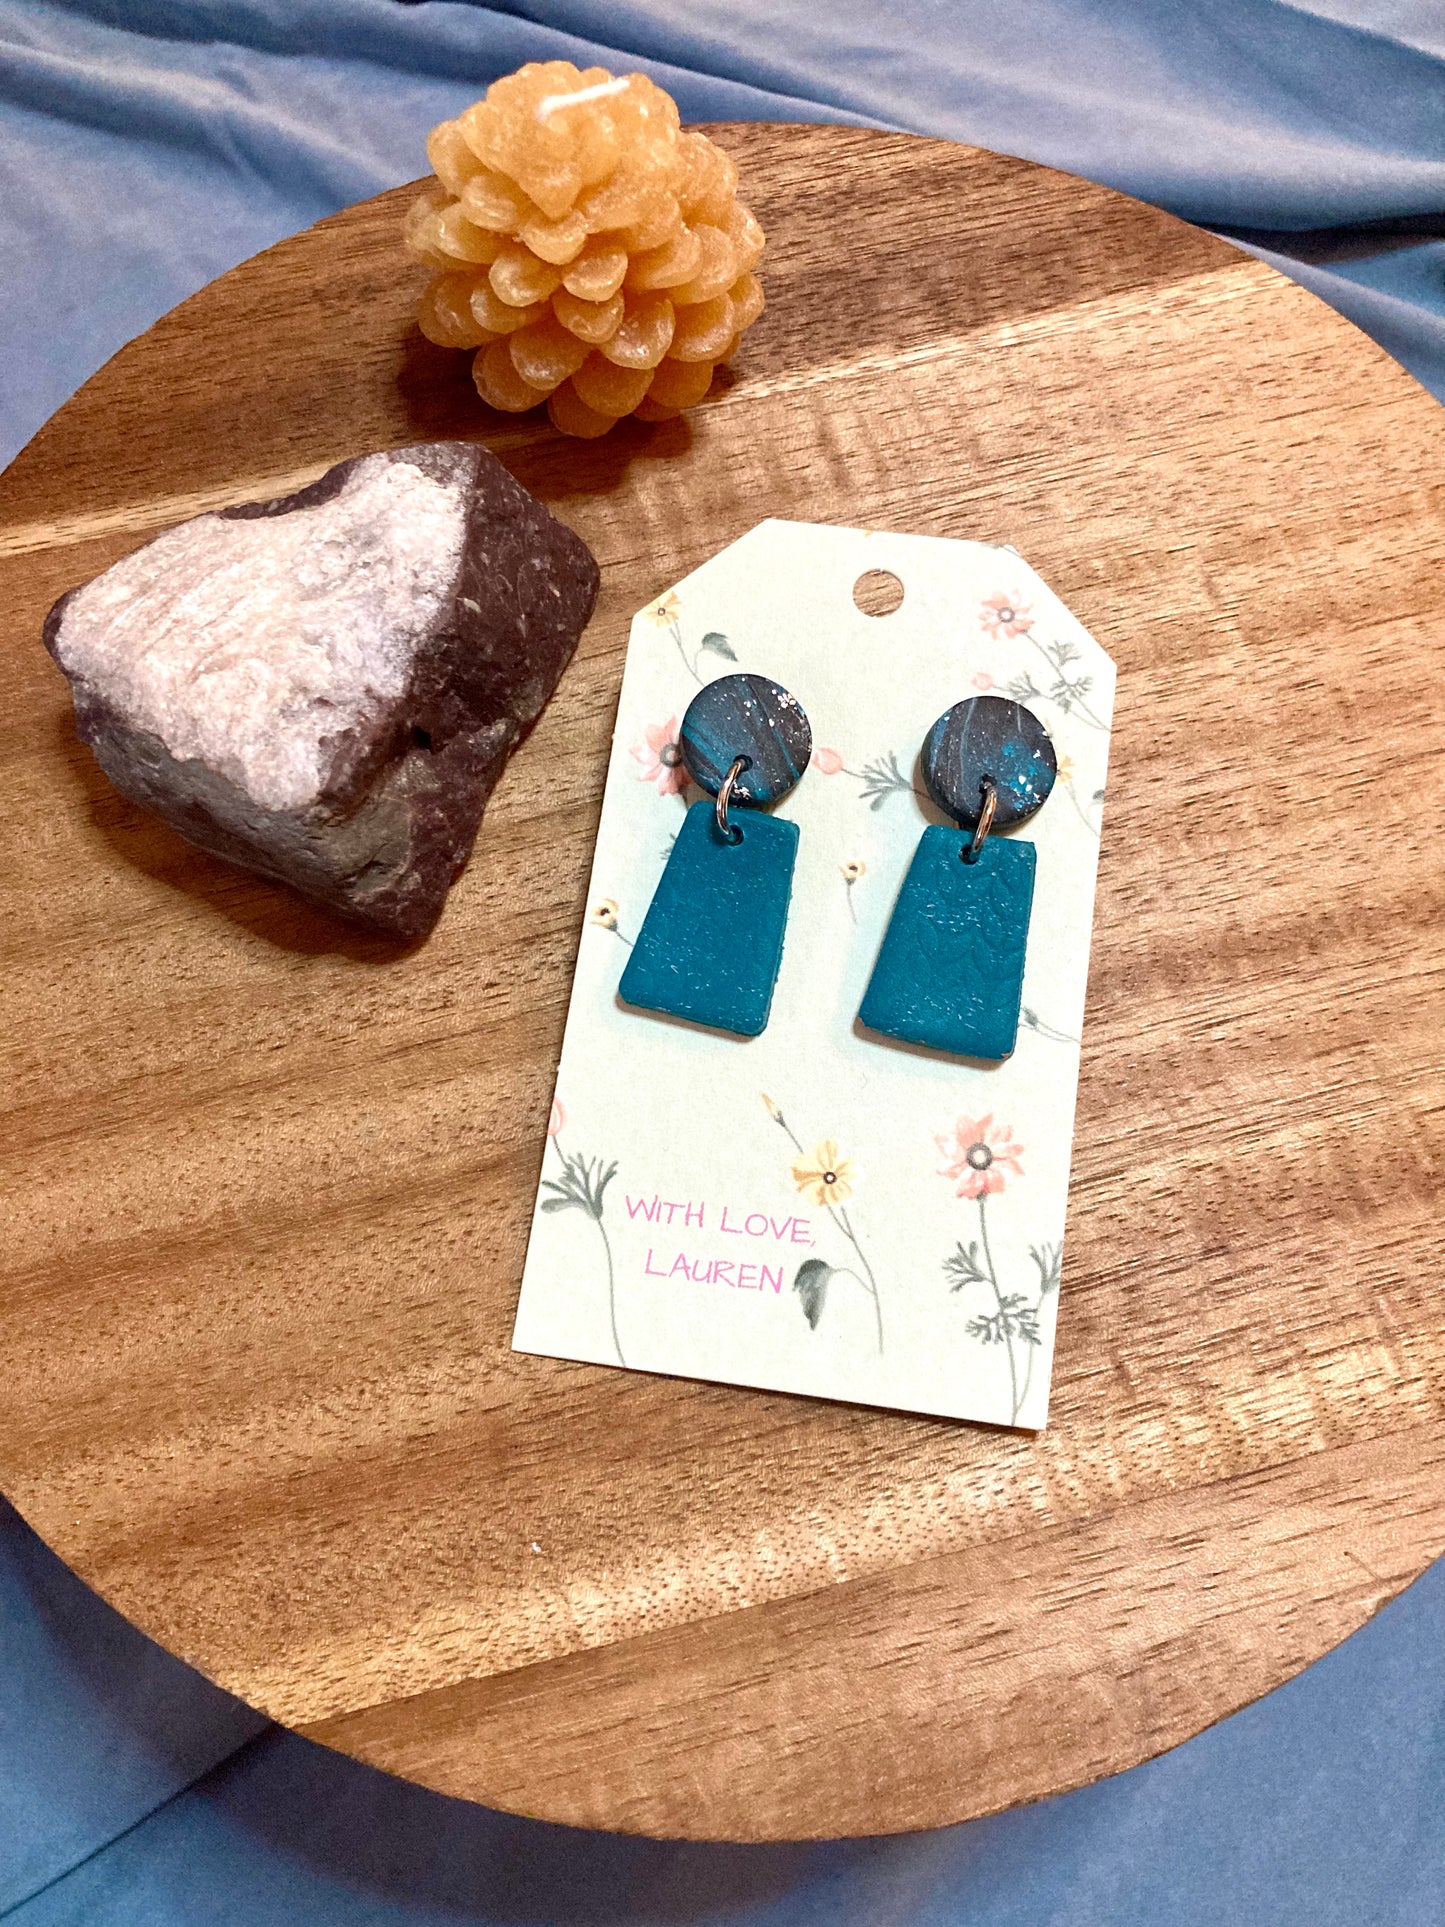 The Mia earrings